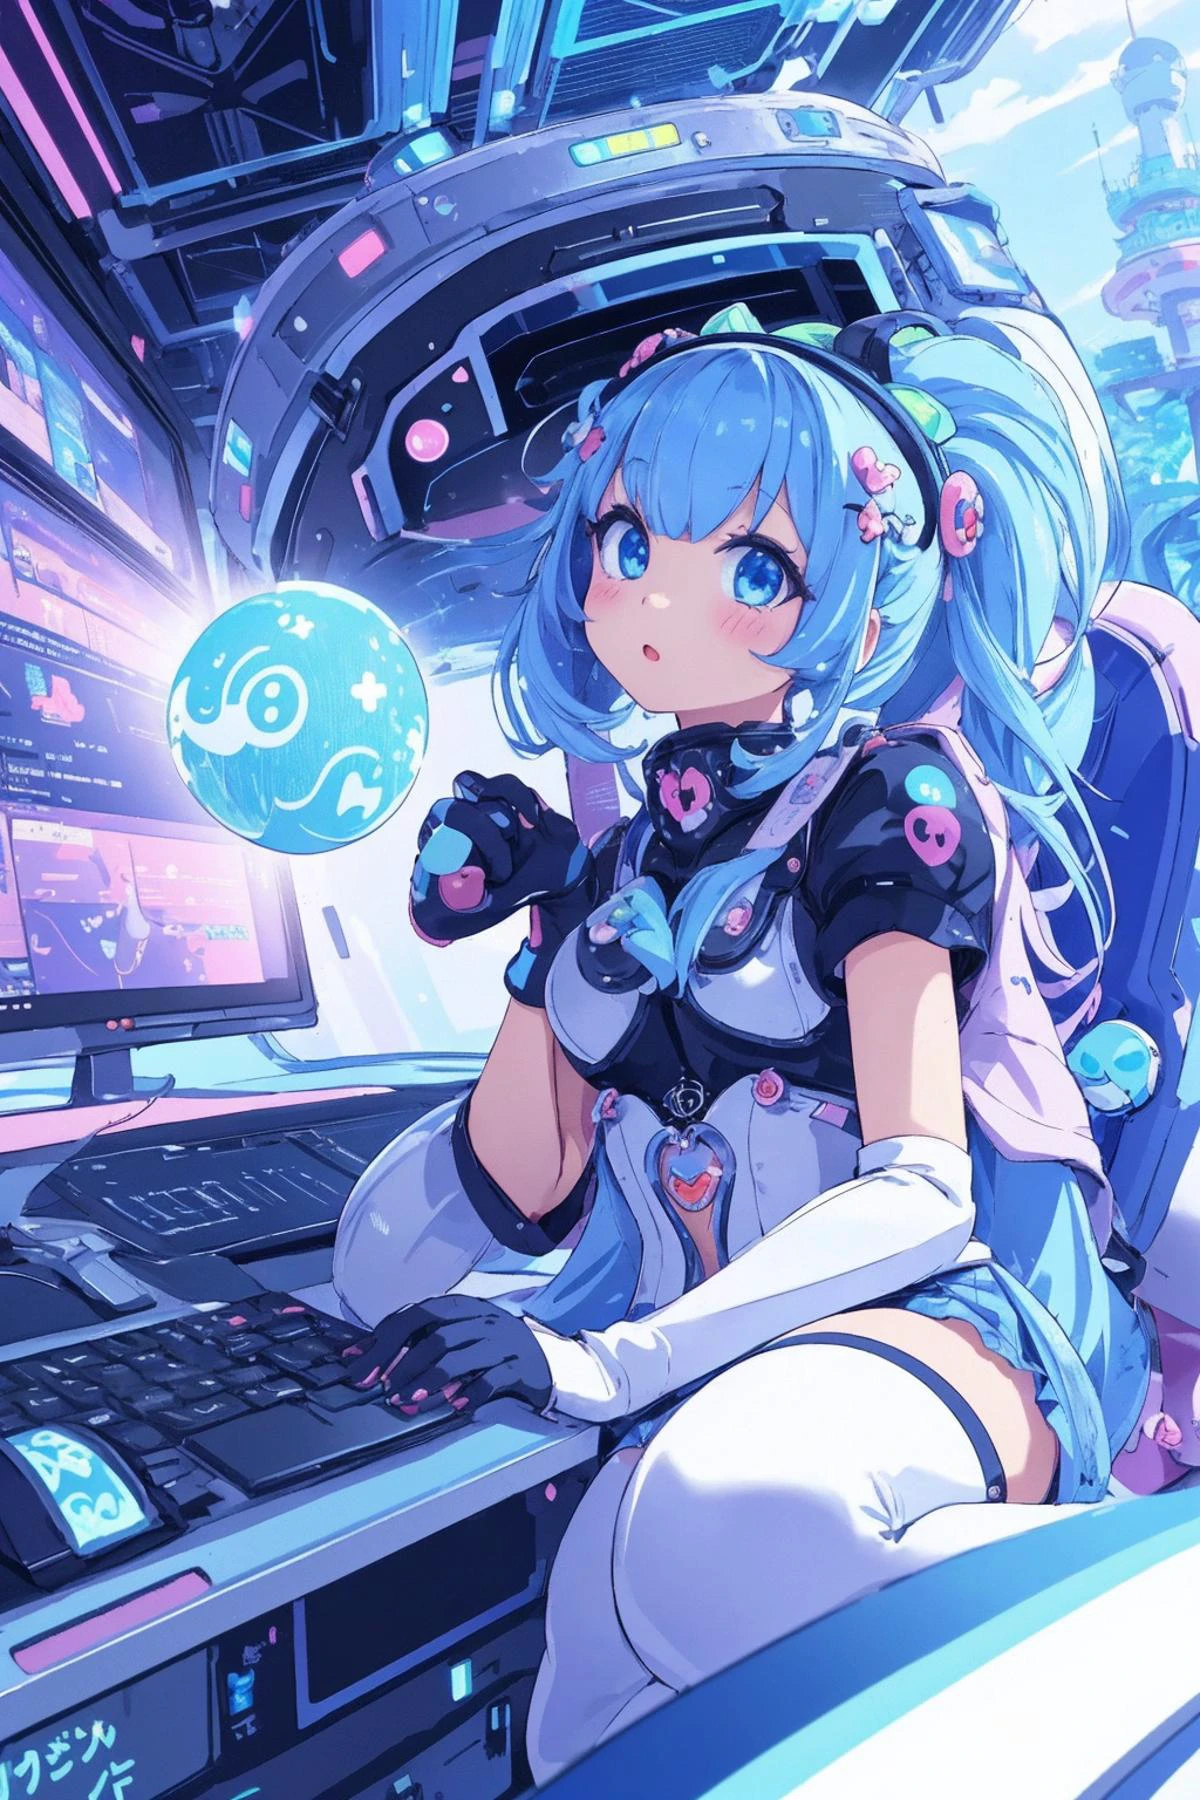 (Kawaii-Charakter:1.4), 
Cyber-Prinzessin,
Sie vertieft sich in das Cyber-Netzwerk,
(Spezialeffekte),
Meisterwerk, beste Qualität,
scharfes Bild, scharfes Bild, klares Bild, unwirkliches Bild, 
extrem detaillierter Hintergrund,